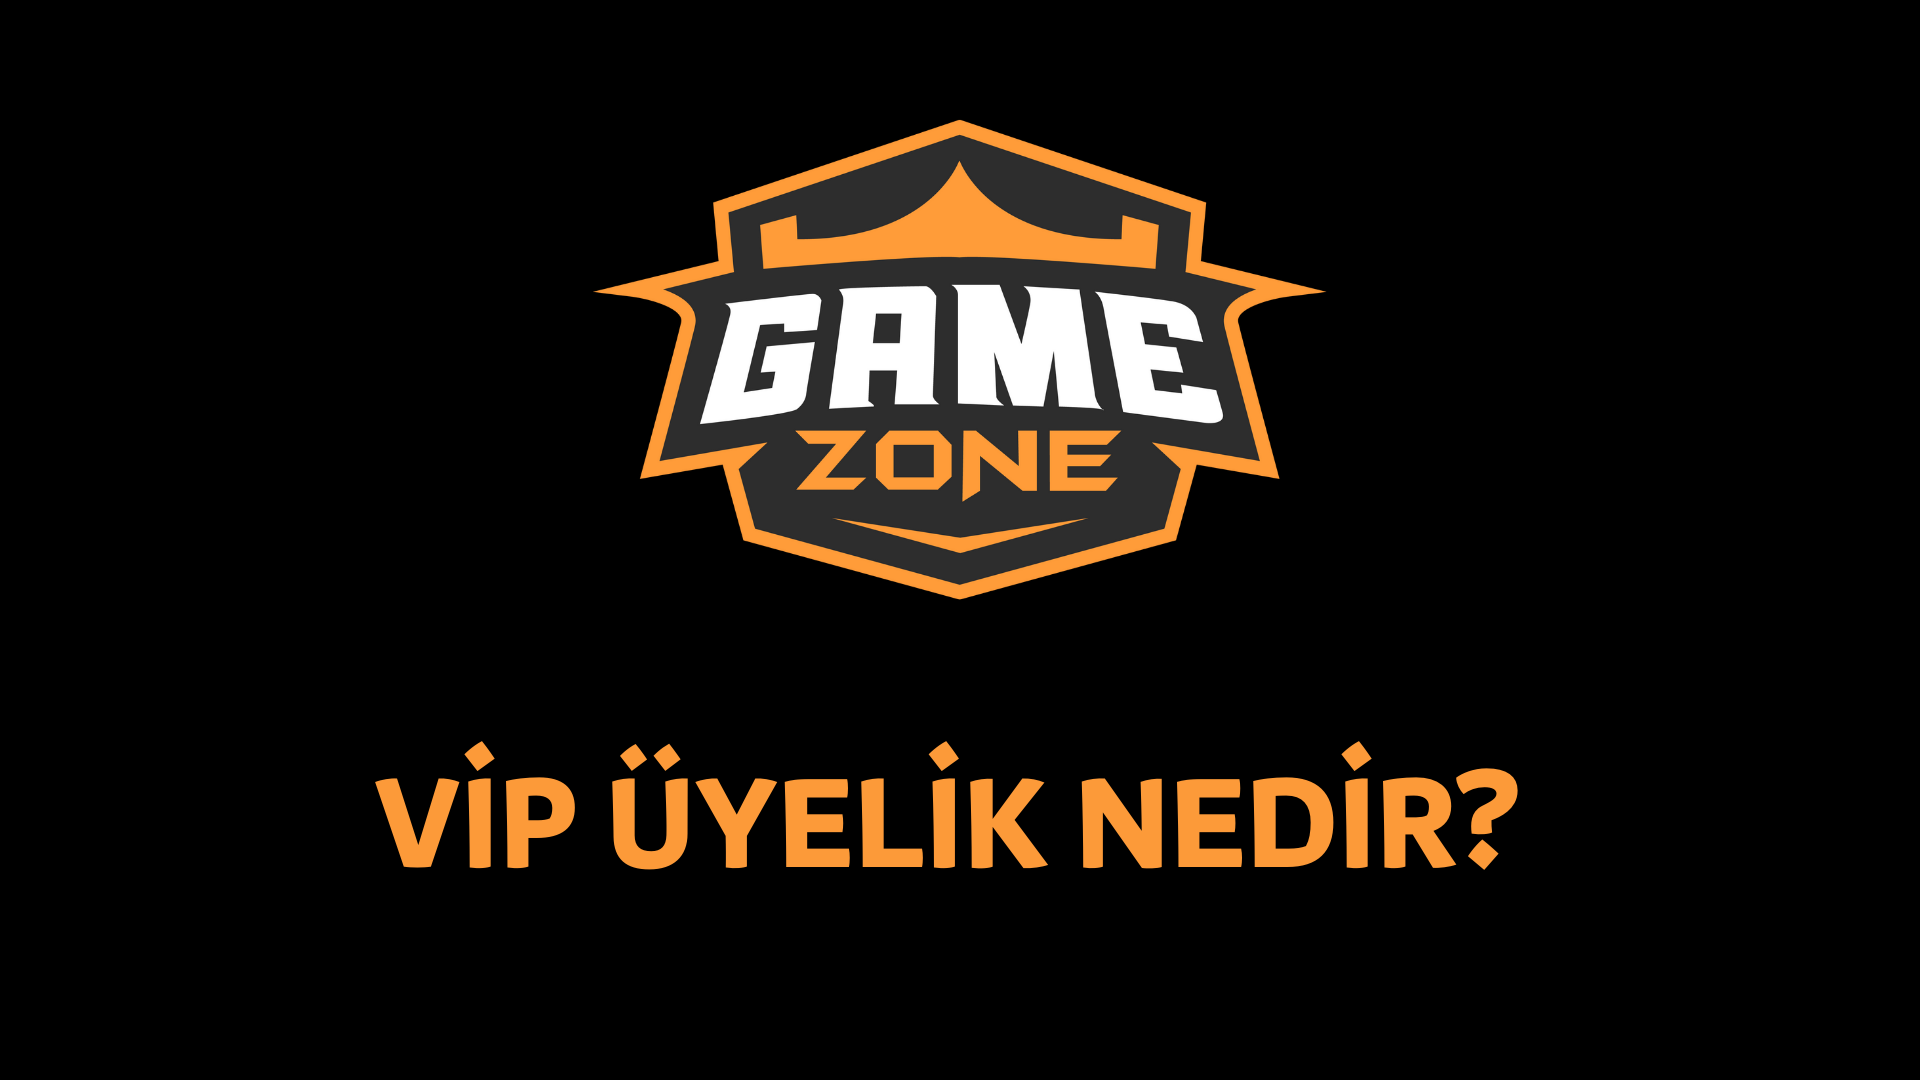 GameZone VIP Uyelik Nedir?